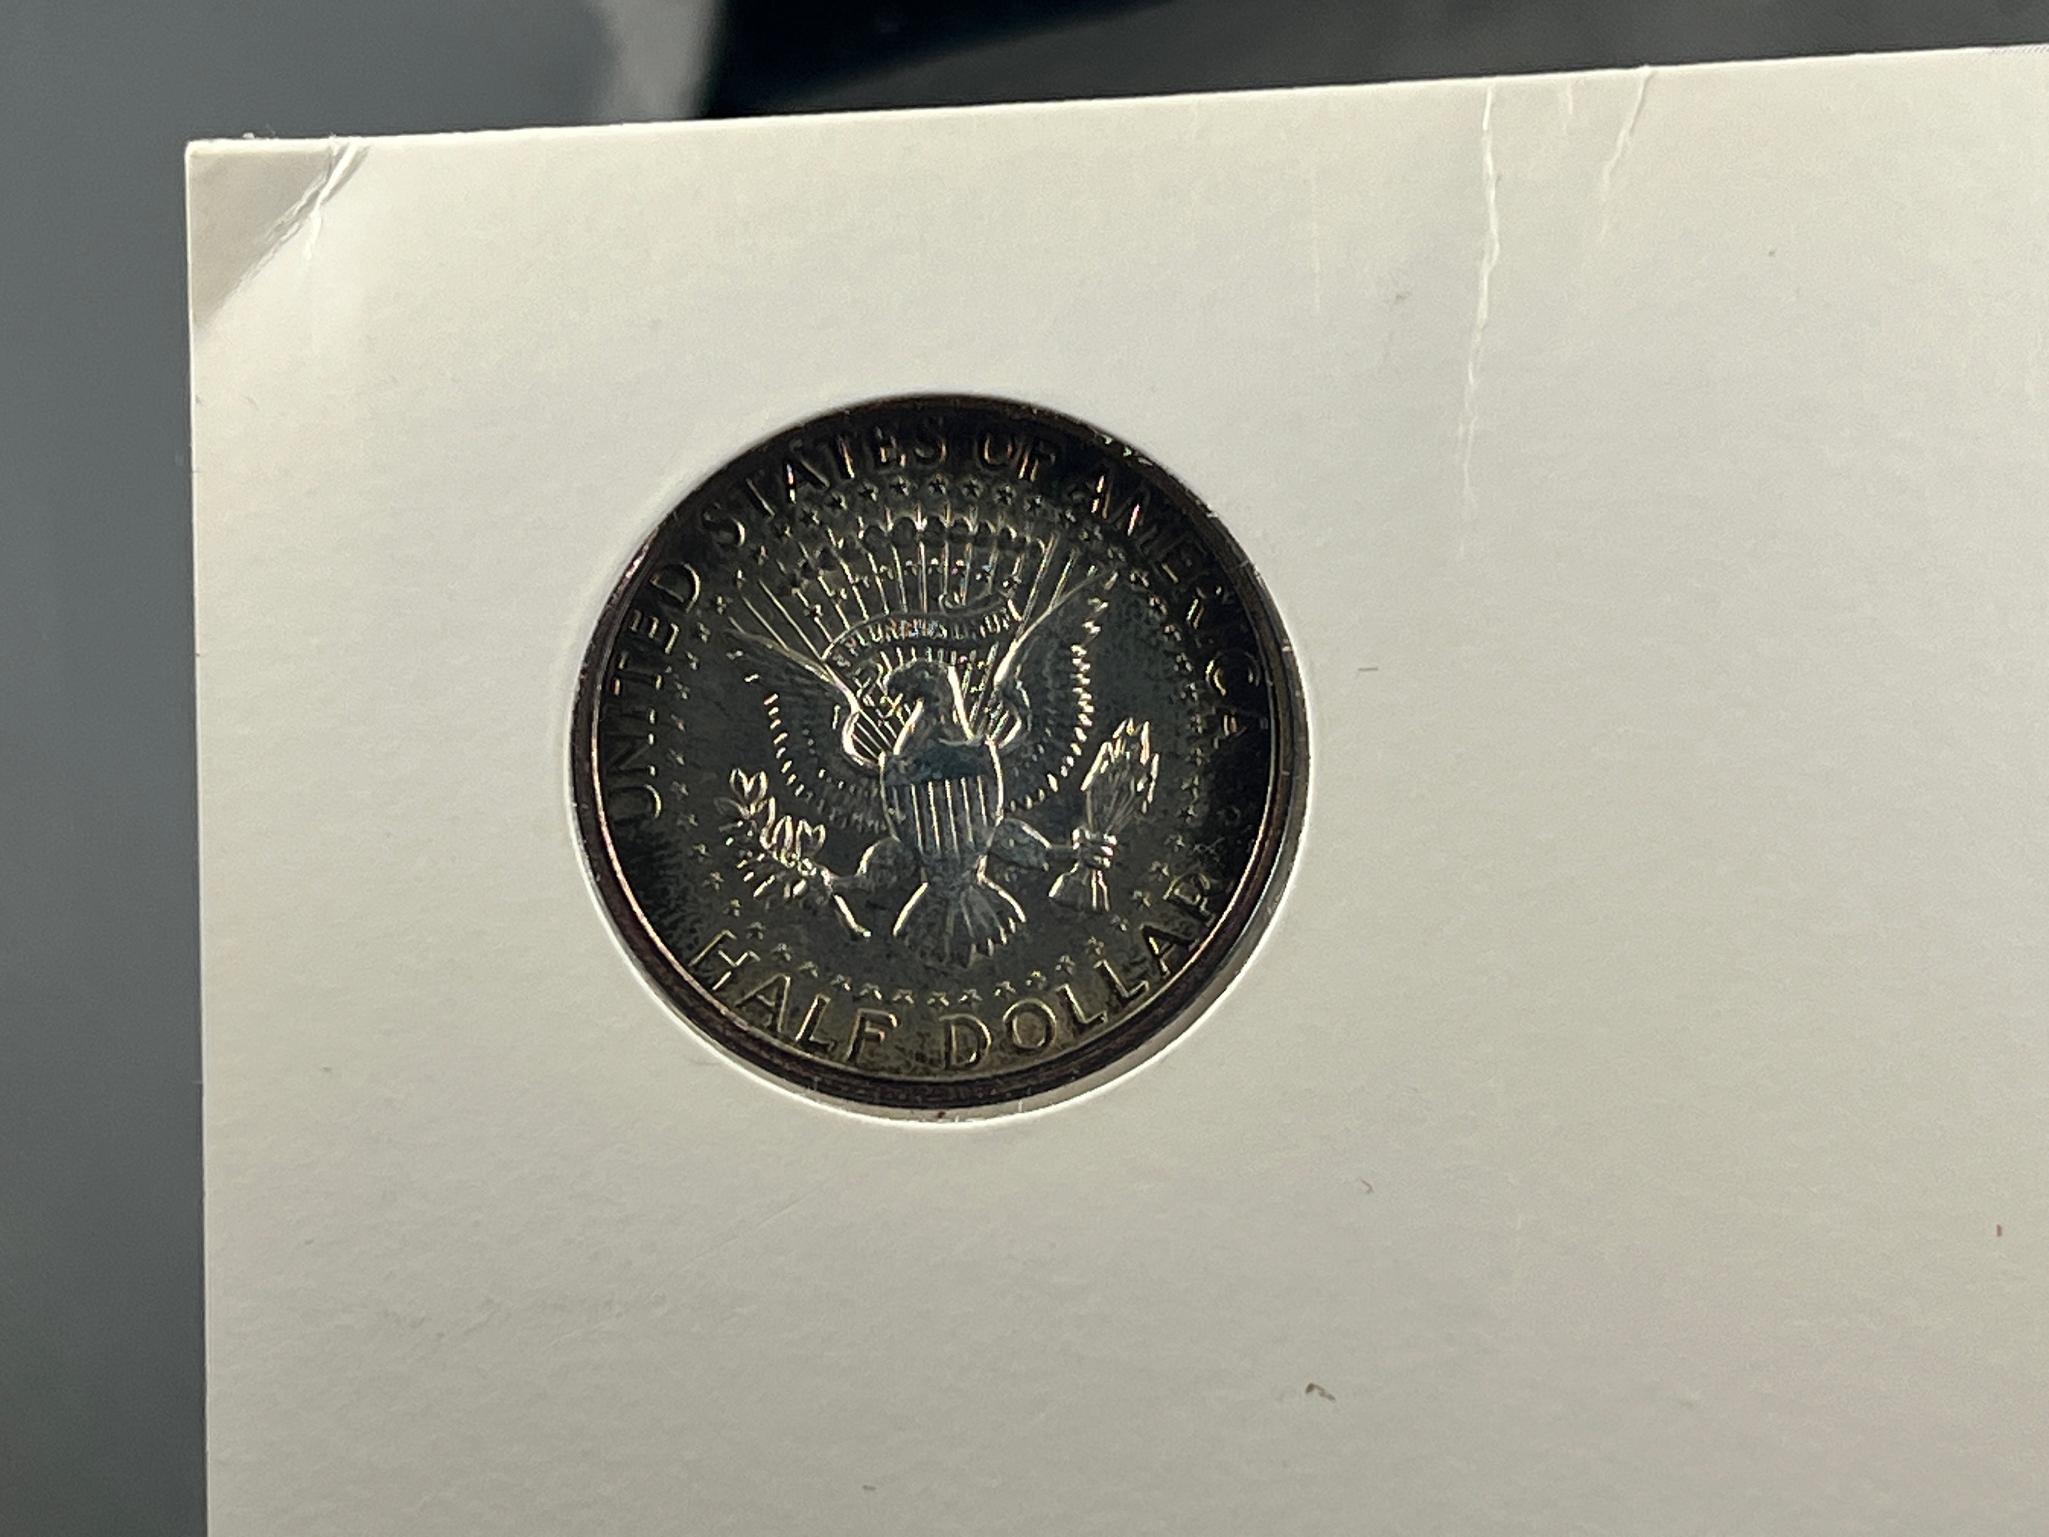 1967 Kennedy Half Dollar w/ story card, 40% silver